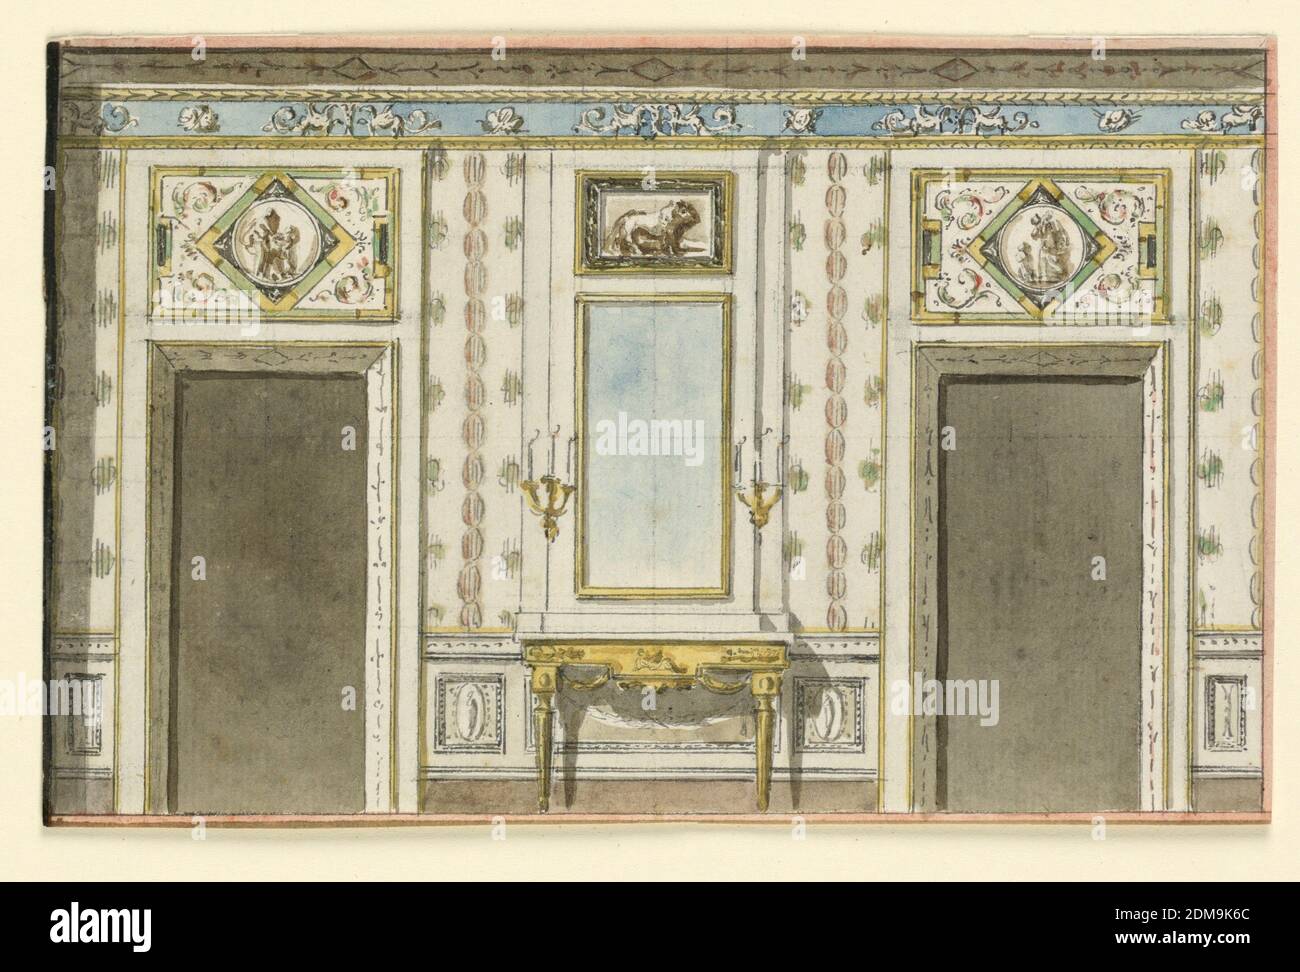 Erhebung einer Mauer, EINE Wandtafel wird von zwei Türöffnungen mit längs mit grotesken Dekoration als Übertüren flankiert., Italien, 1790, Zeichnung Stockfoto